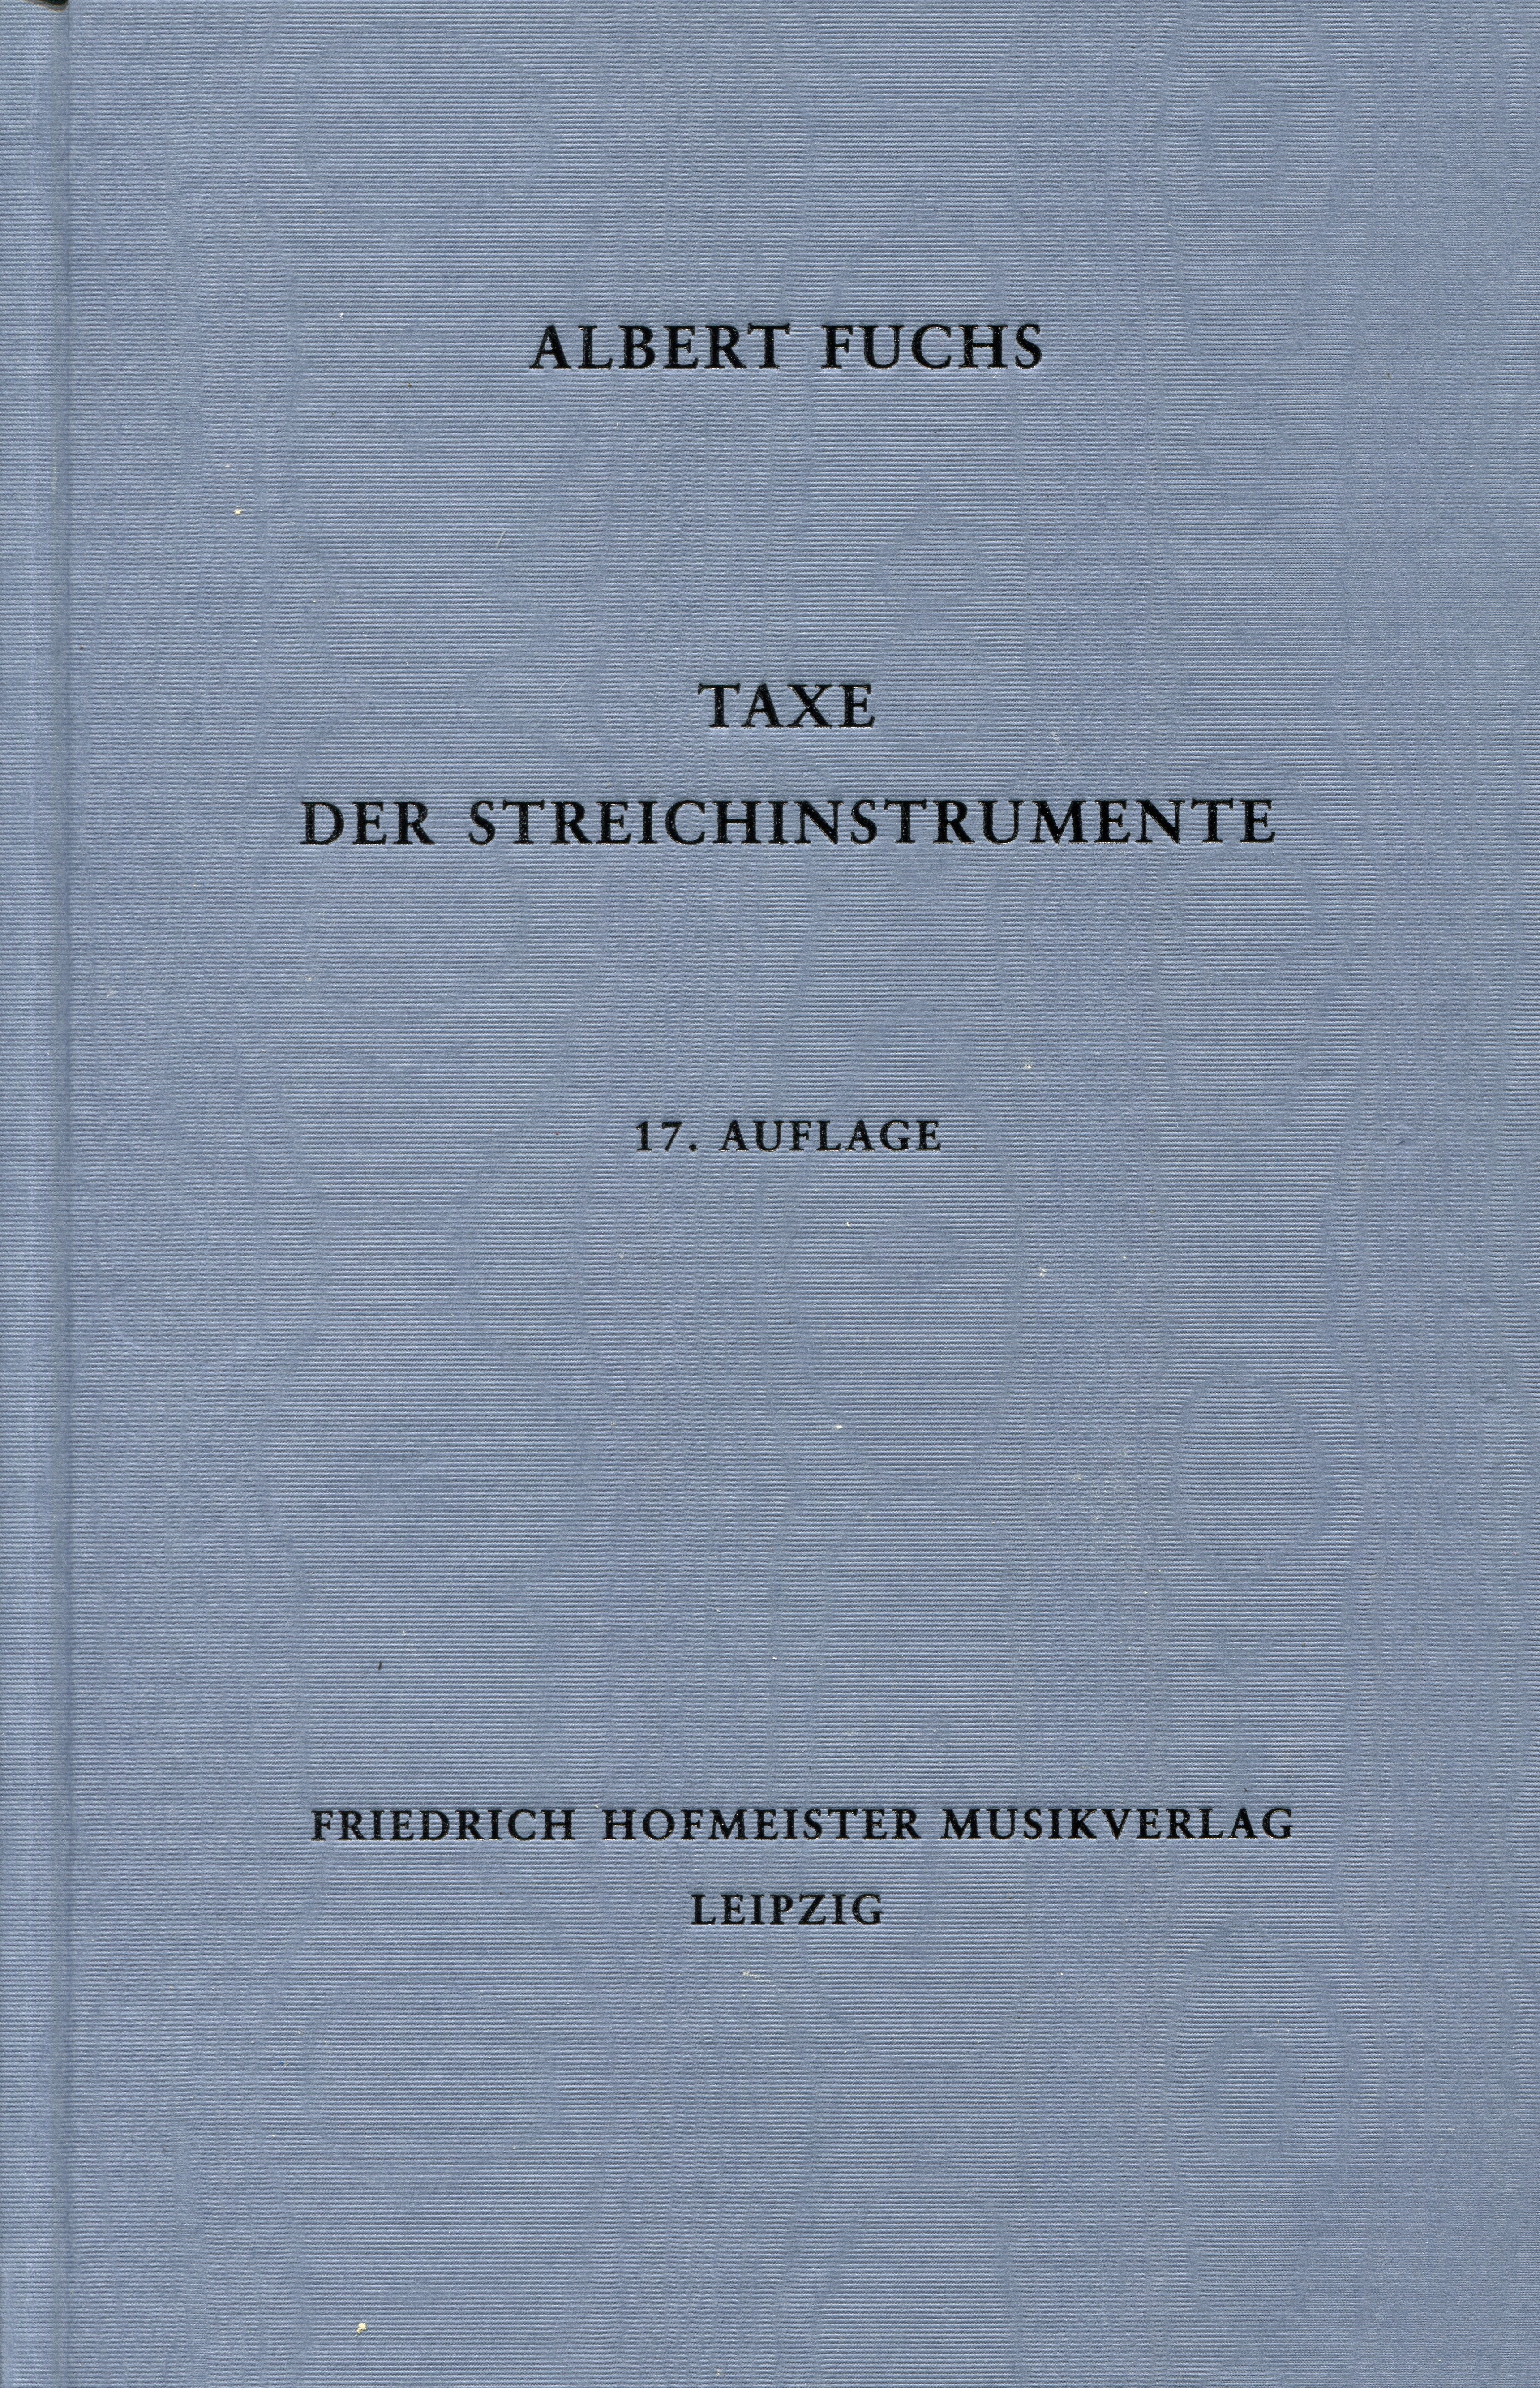 A. Fuchs Taxe der Streichinstrumente 17. Ausgabe 2017